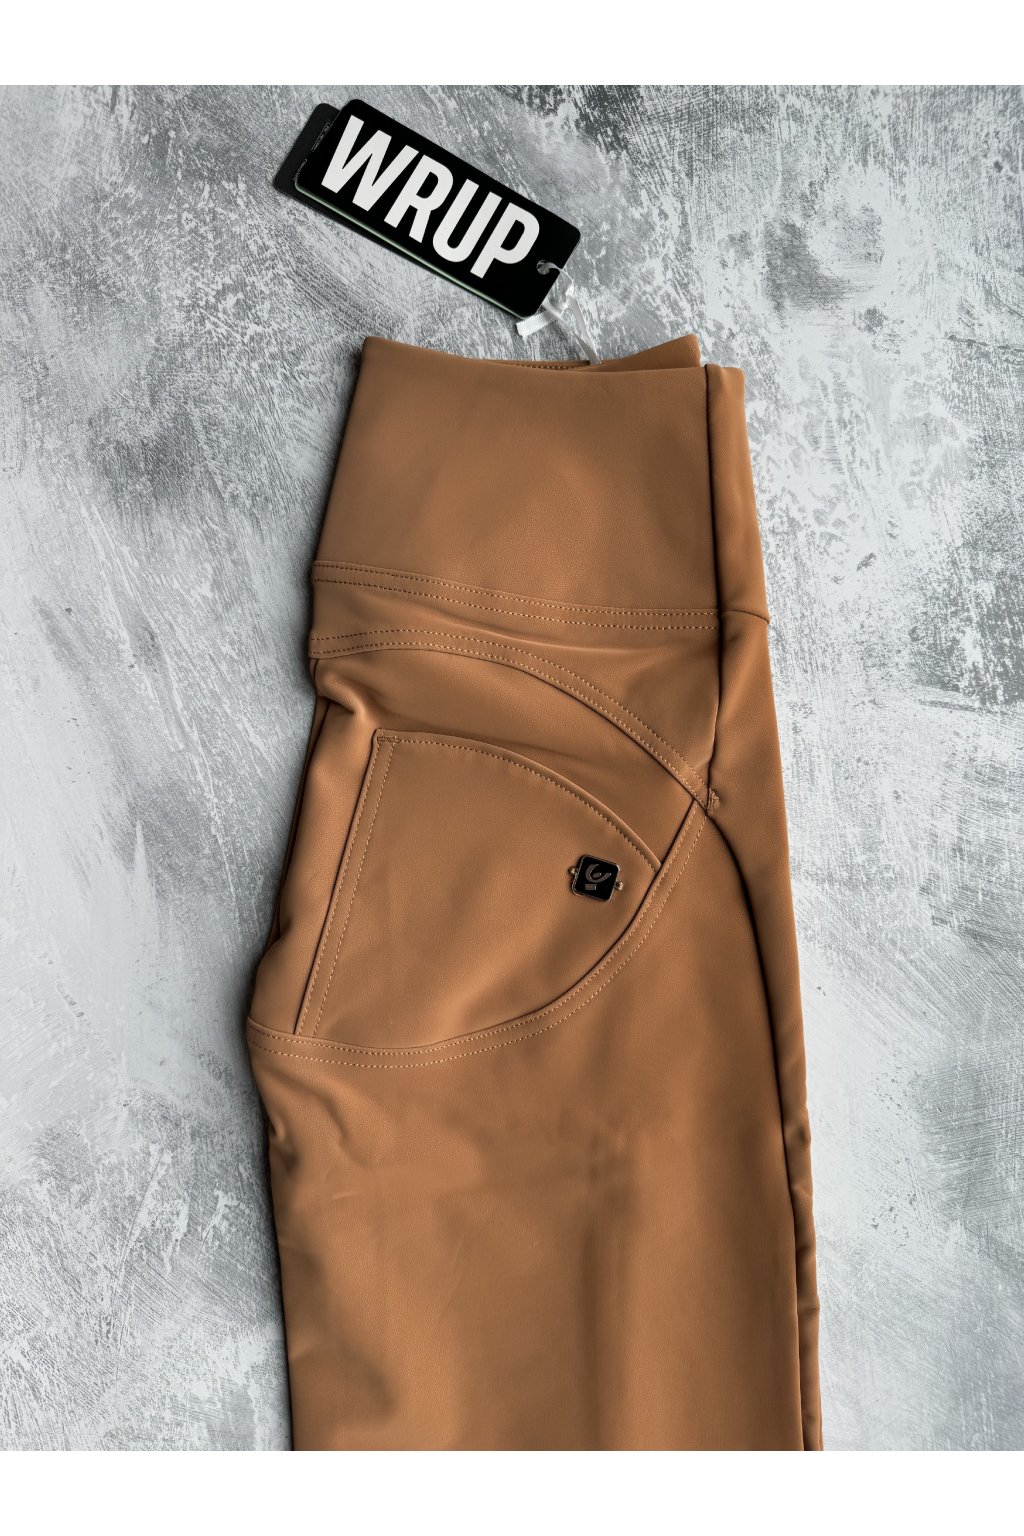 FW24 Kolekce - Freddy WR.UP kalhoty v hořčicové barvě, vysoký pas, postranní zip, zvonové nohavice